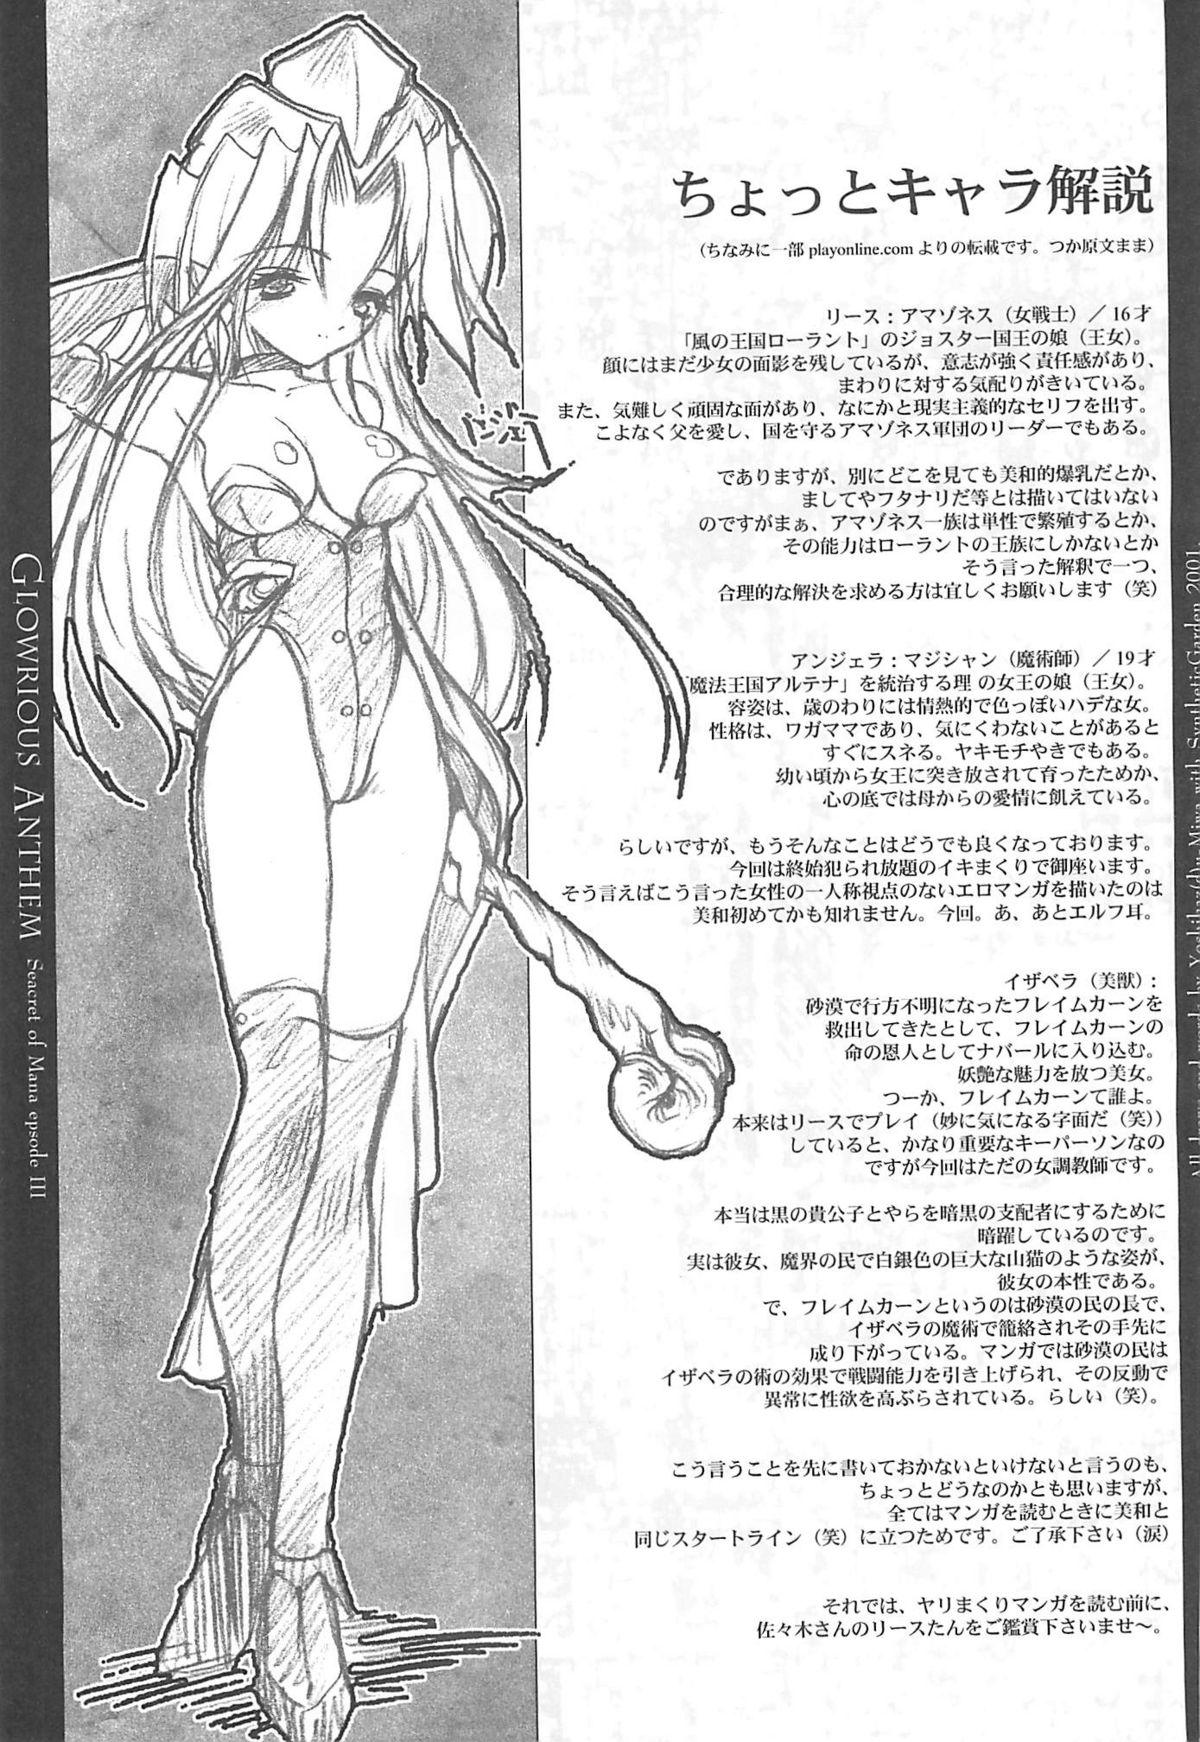 Gaysex Glorious Anthem - Seiken densetsu 3 Bunduda - Page 5